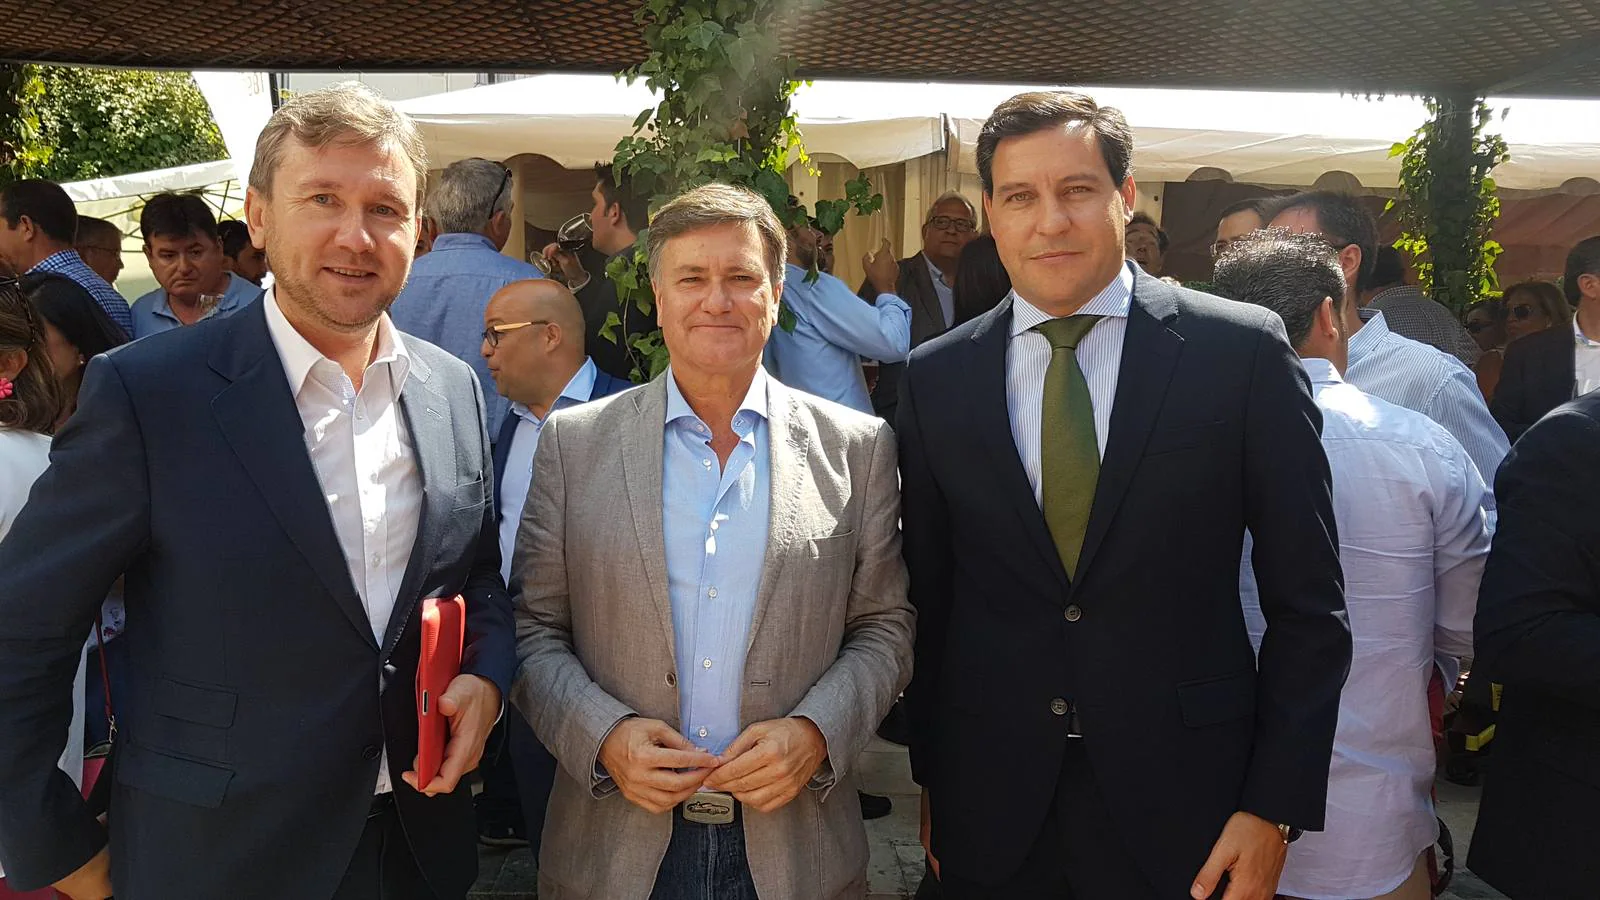 El alcalde de Burgos, Javier Lacalle; Francisco Vázquez, presidente de la Diputación de Segovia y secretario regional del PP, y Raúl de la Hoz, portavoz del PP en las Cortes.